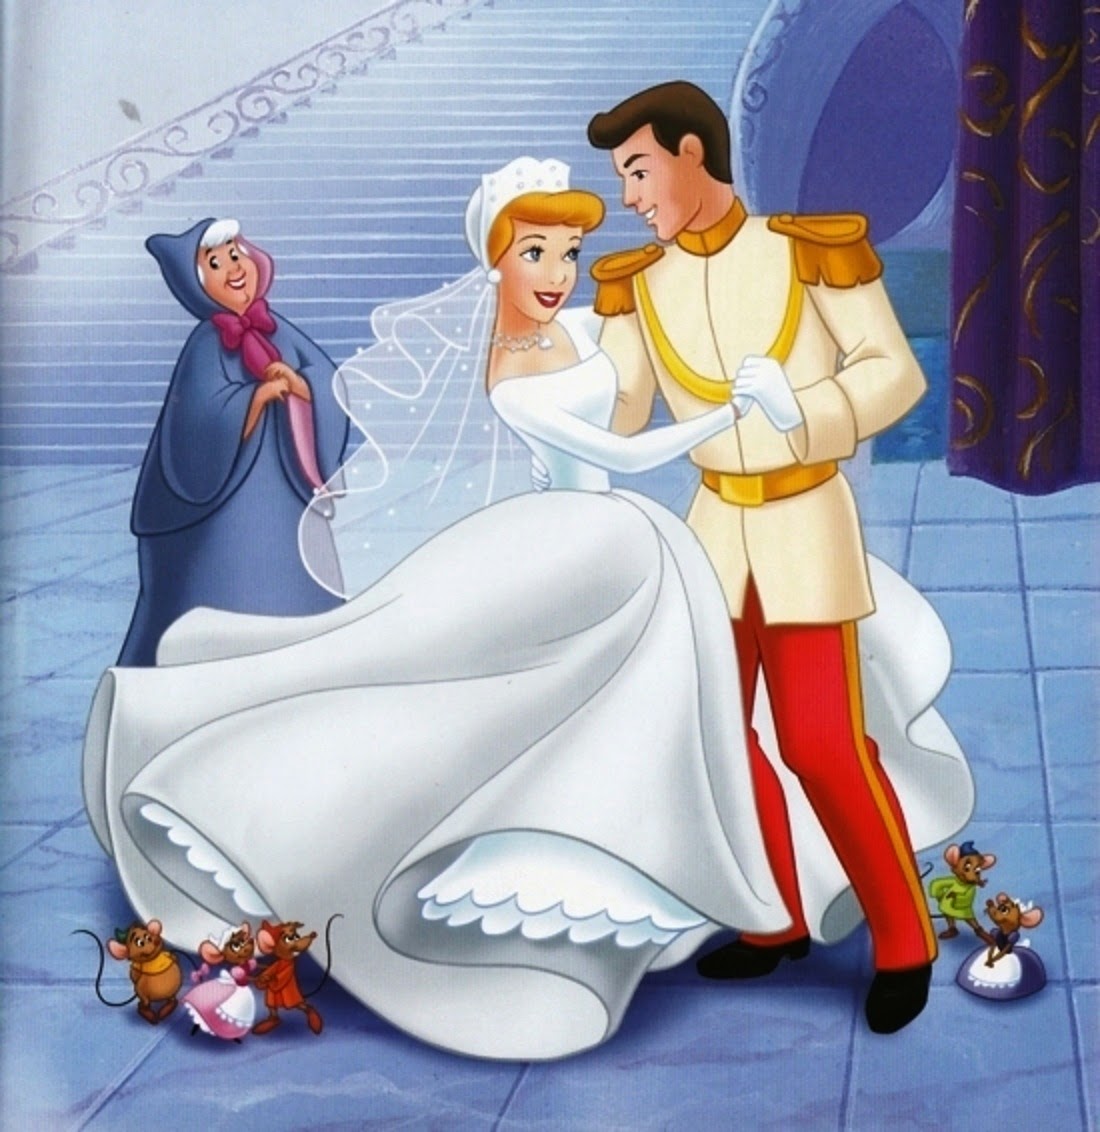 Принцессы выходят. Свадьба принцессы Дисней Золушки. Disney принцессы Королевская свадьба Золушки. Принц Чарминг Золушка.